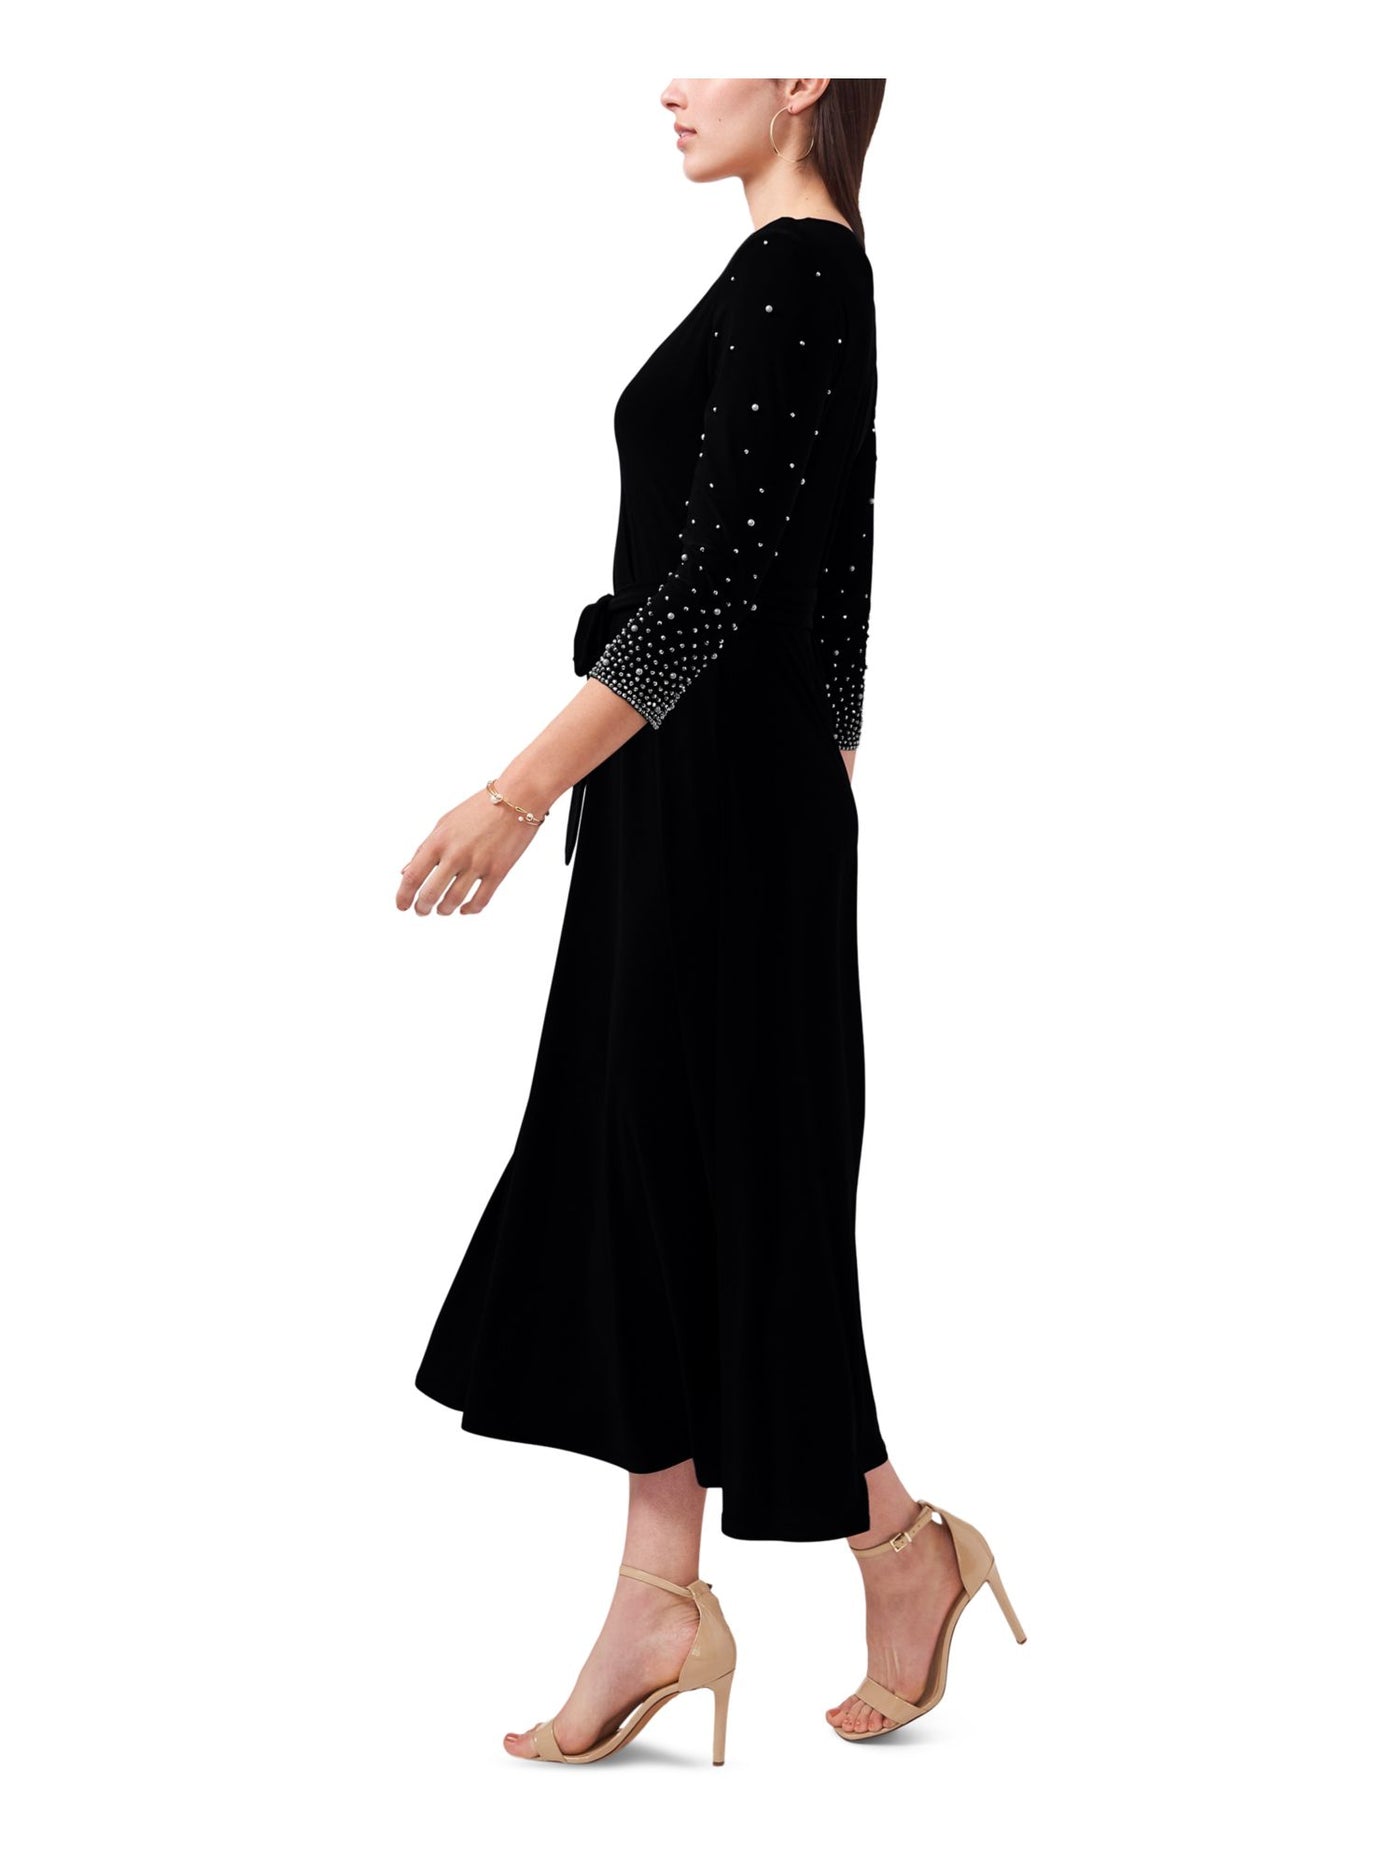 MSK PETITES Womens Black Embellished Belted Pullover 3/4 Sleeve V Neck Midi Party Fit + Flare Dress Petites PL